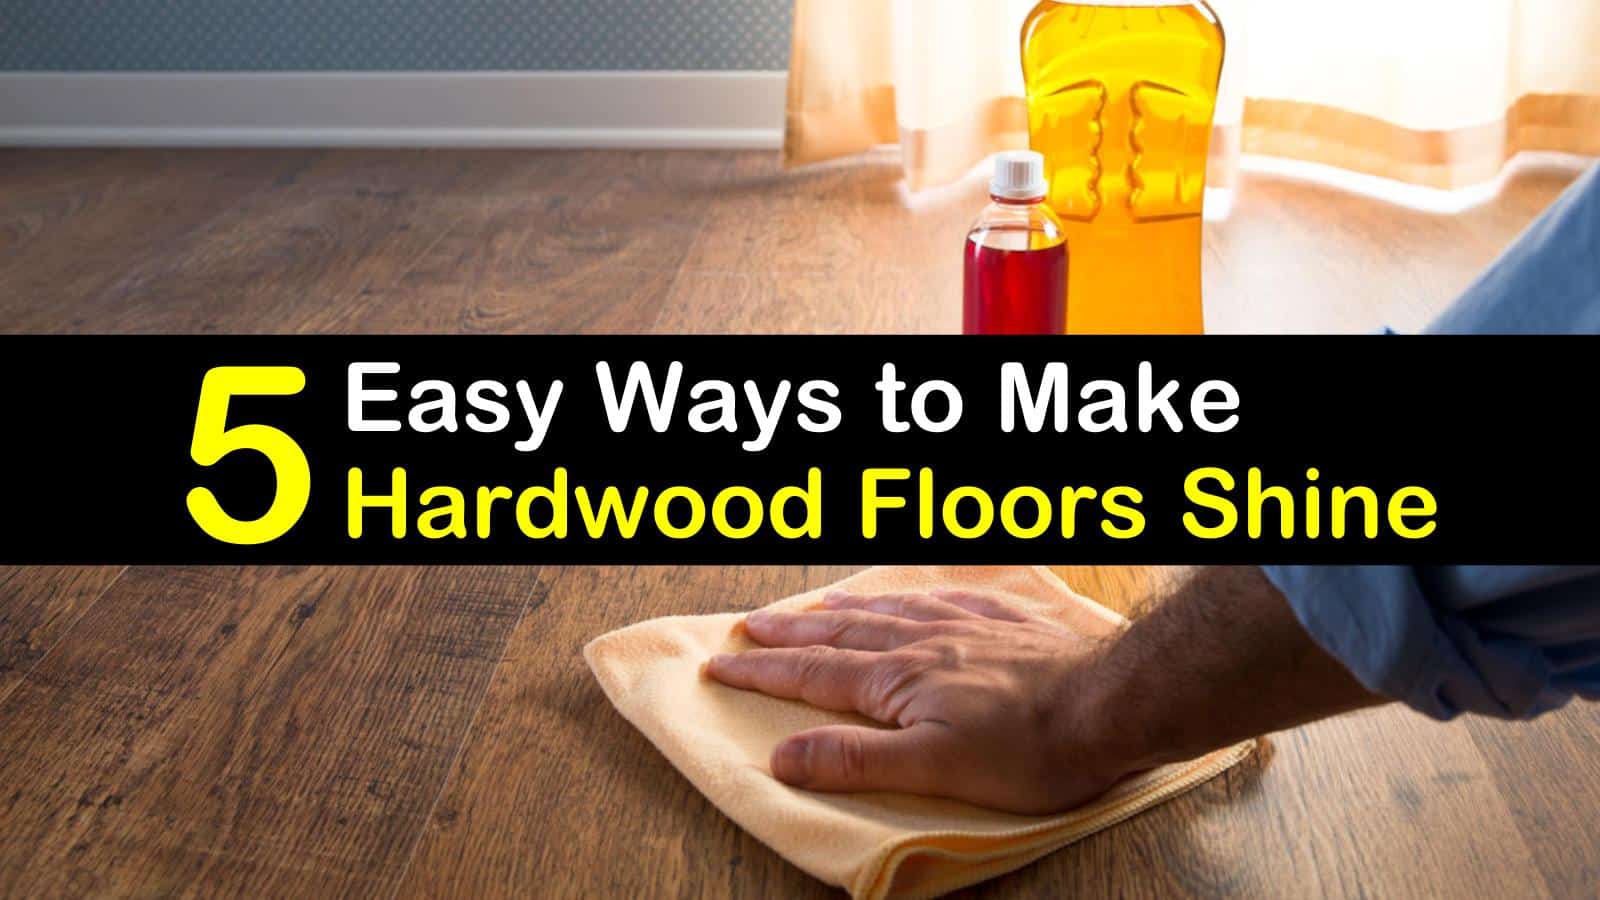 5 Easy Ways To Make Hardwood Floors Shine, Make Your Laminate Floors Shine